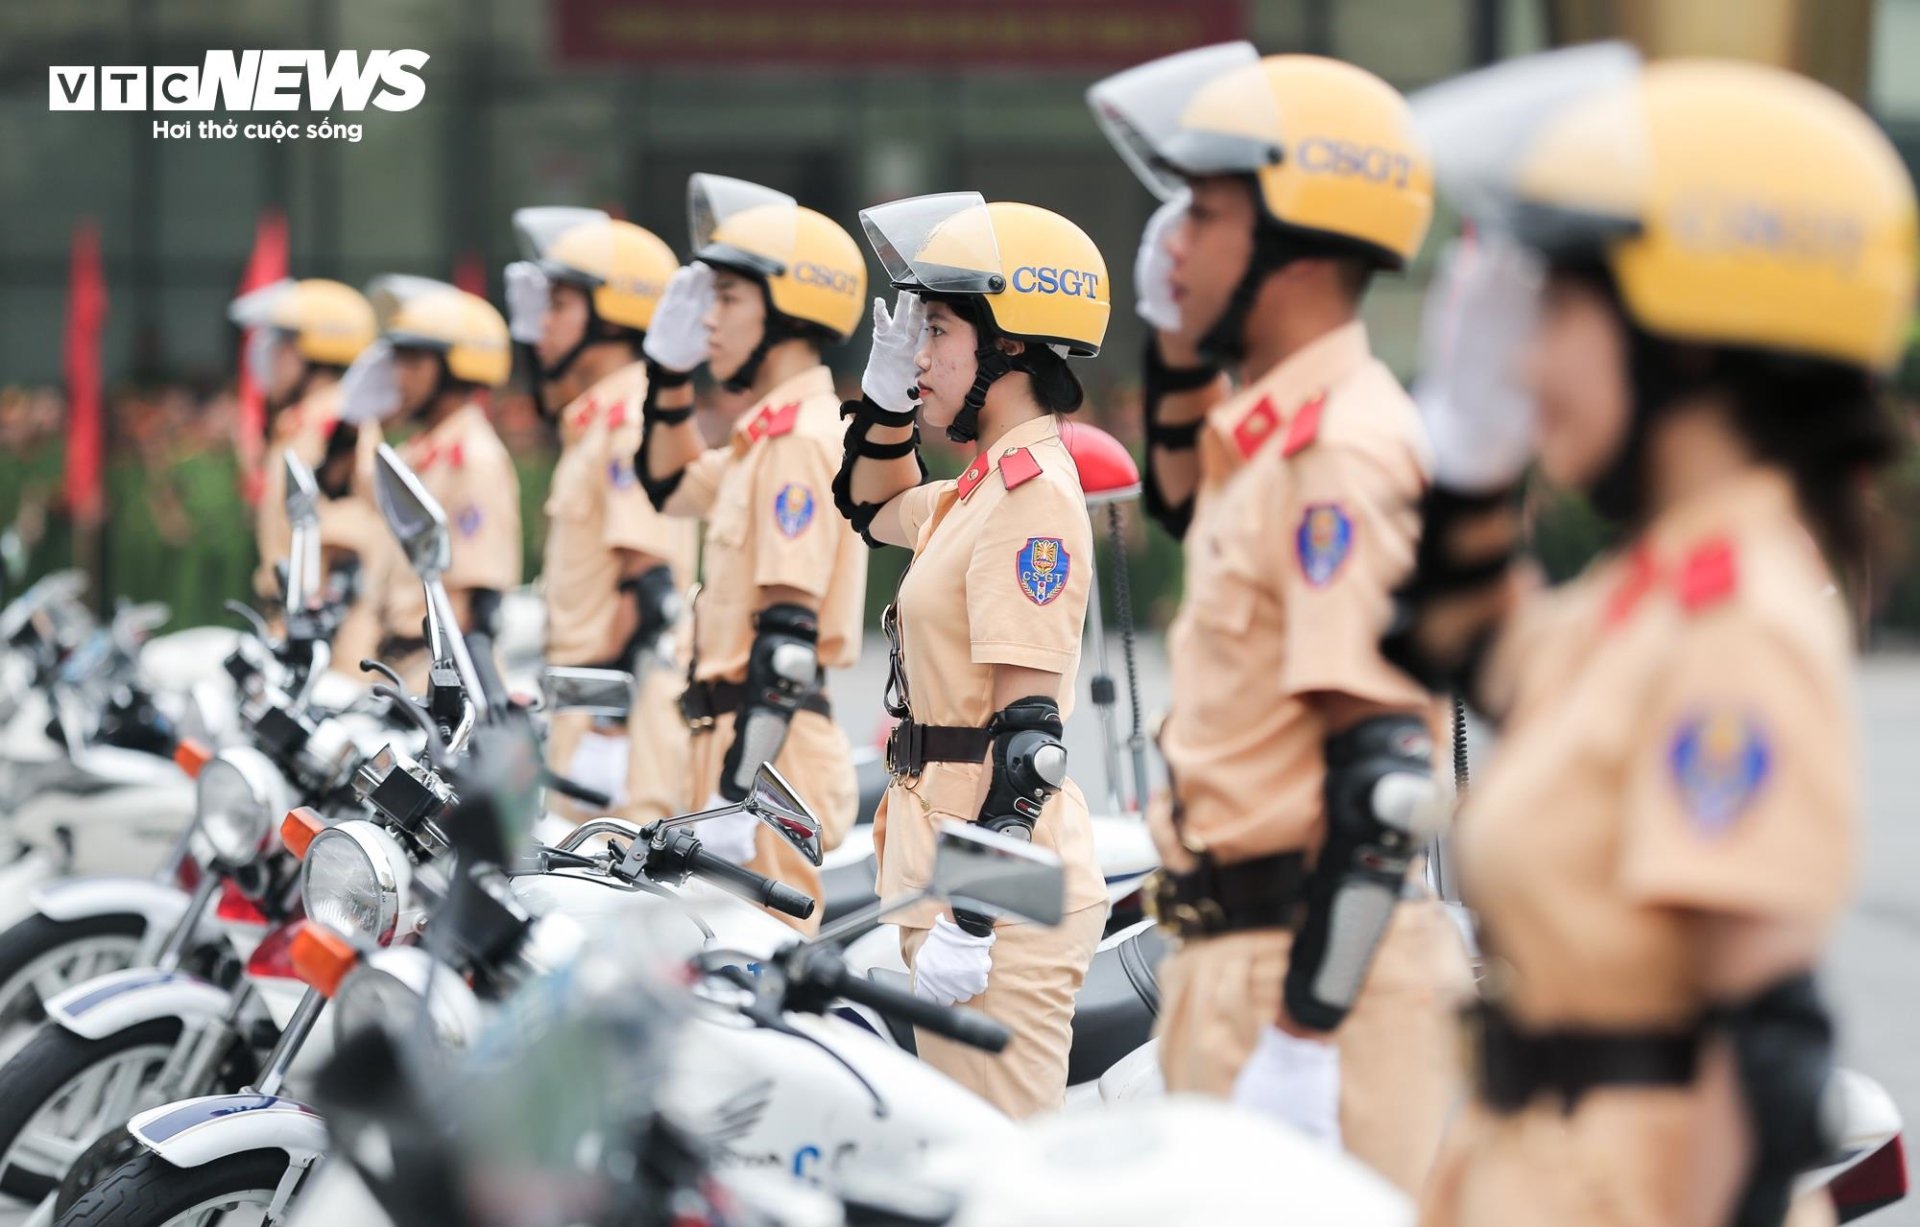 Mãn nhãn màn biểu diễn chạy xe phân khối lớn của nữ học viên Cảnh sát Nhân dân - Ảnh 9.